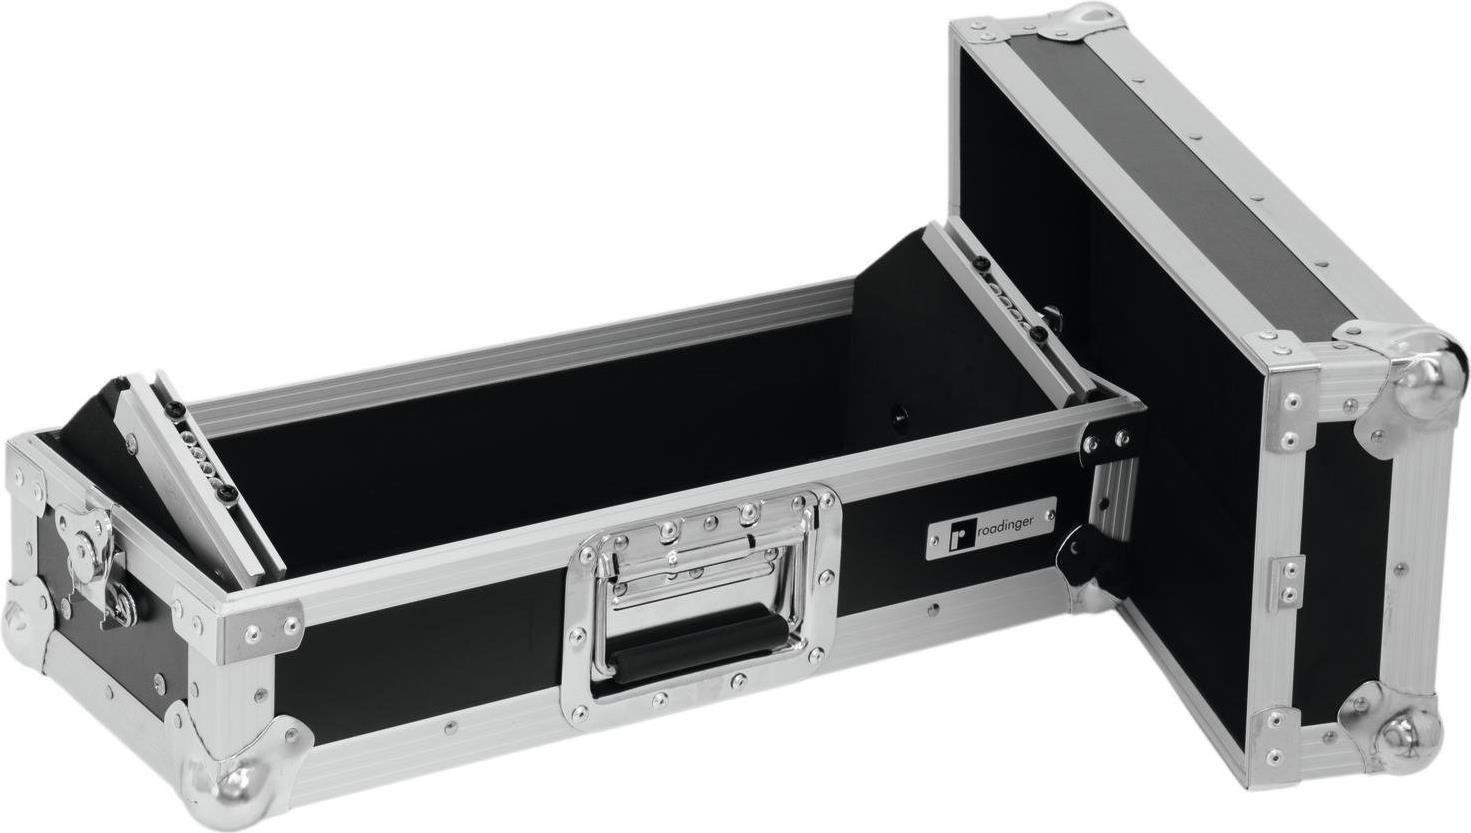 Roadinger MCA-19-N DJ-Mixer Case (L x B x H) 240 x 550 x 235 mm